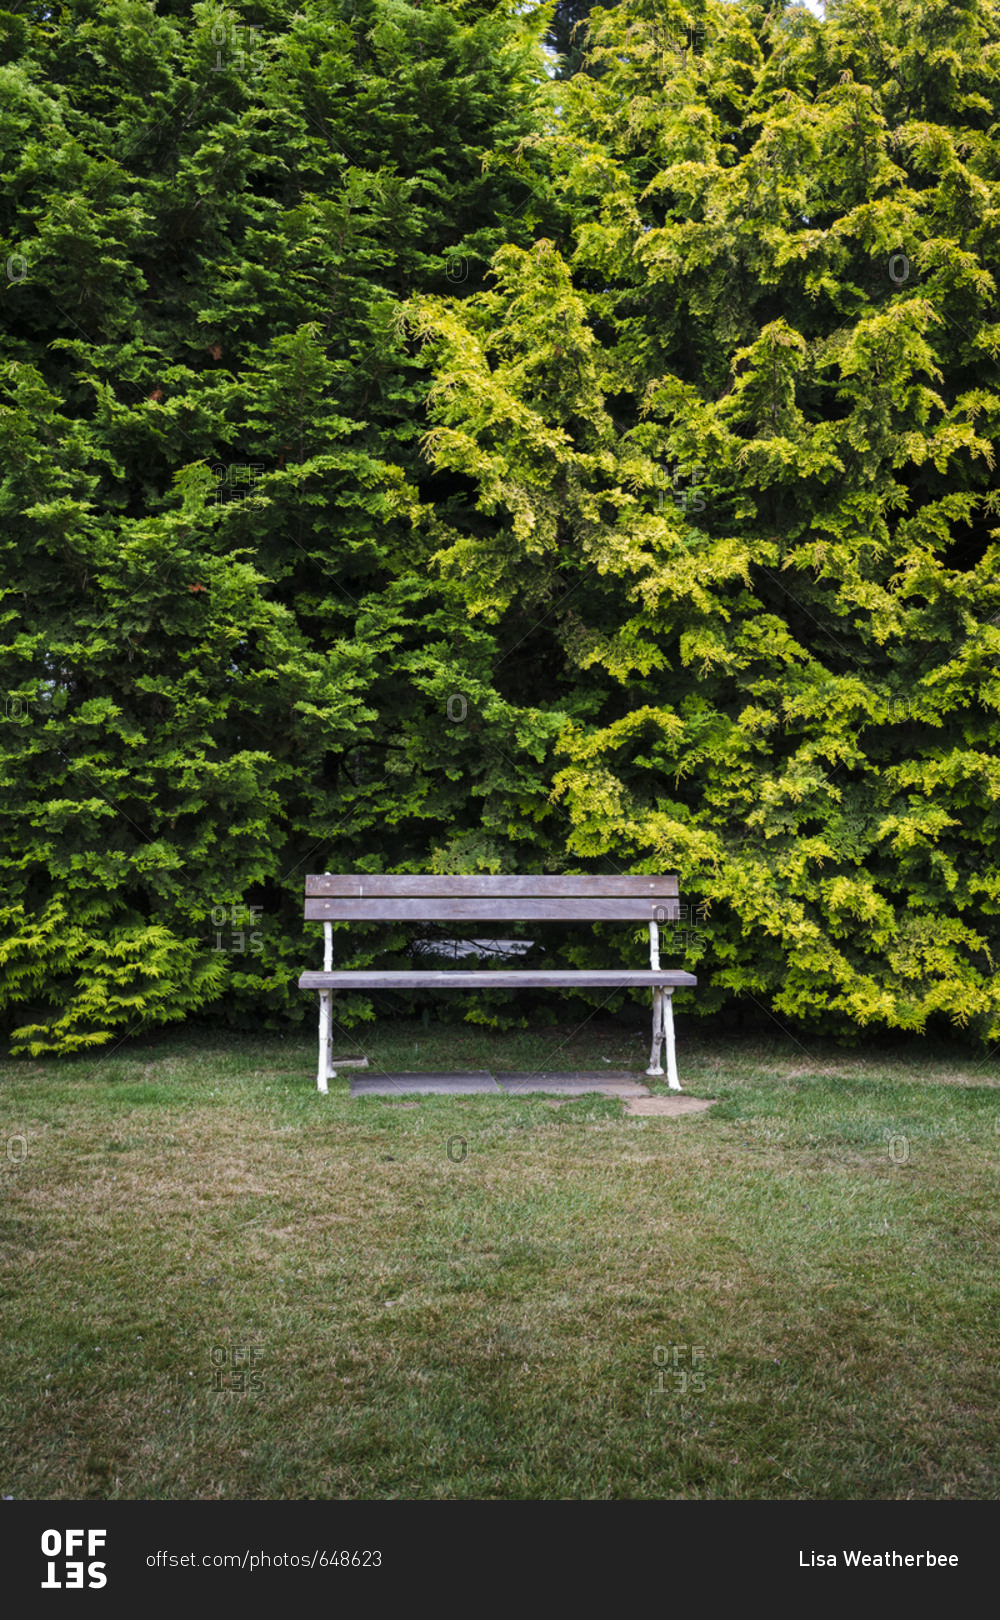 An empty bench in a garden